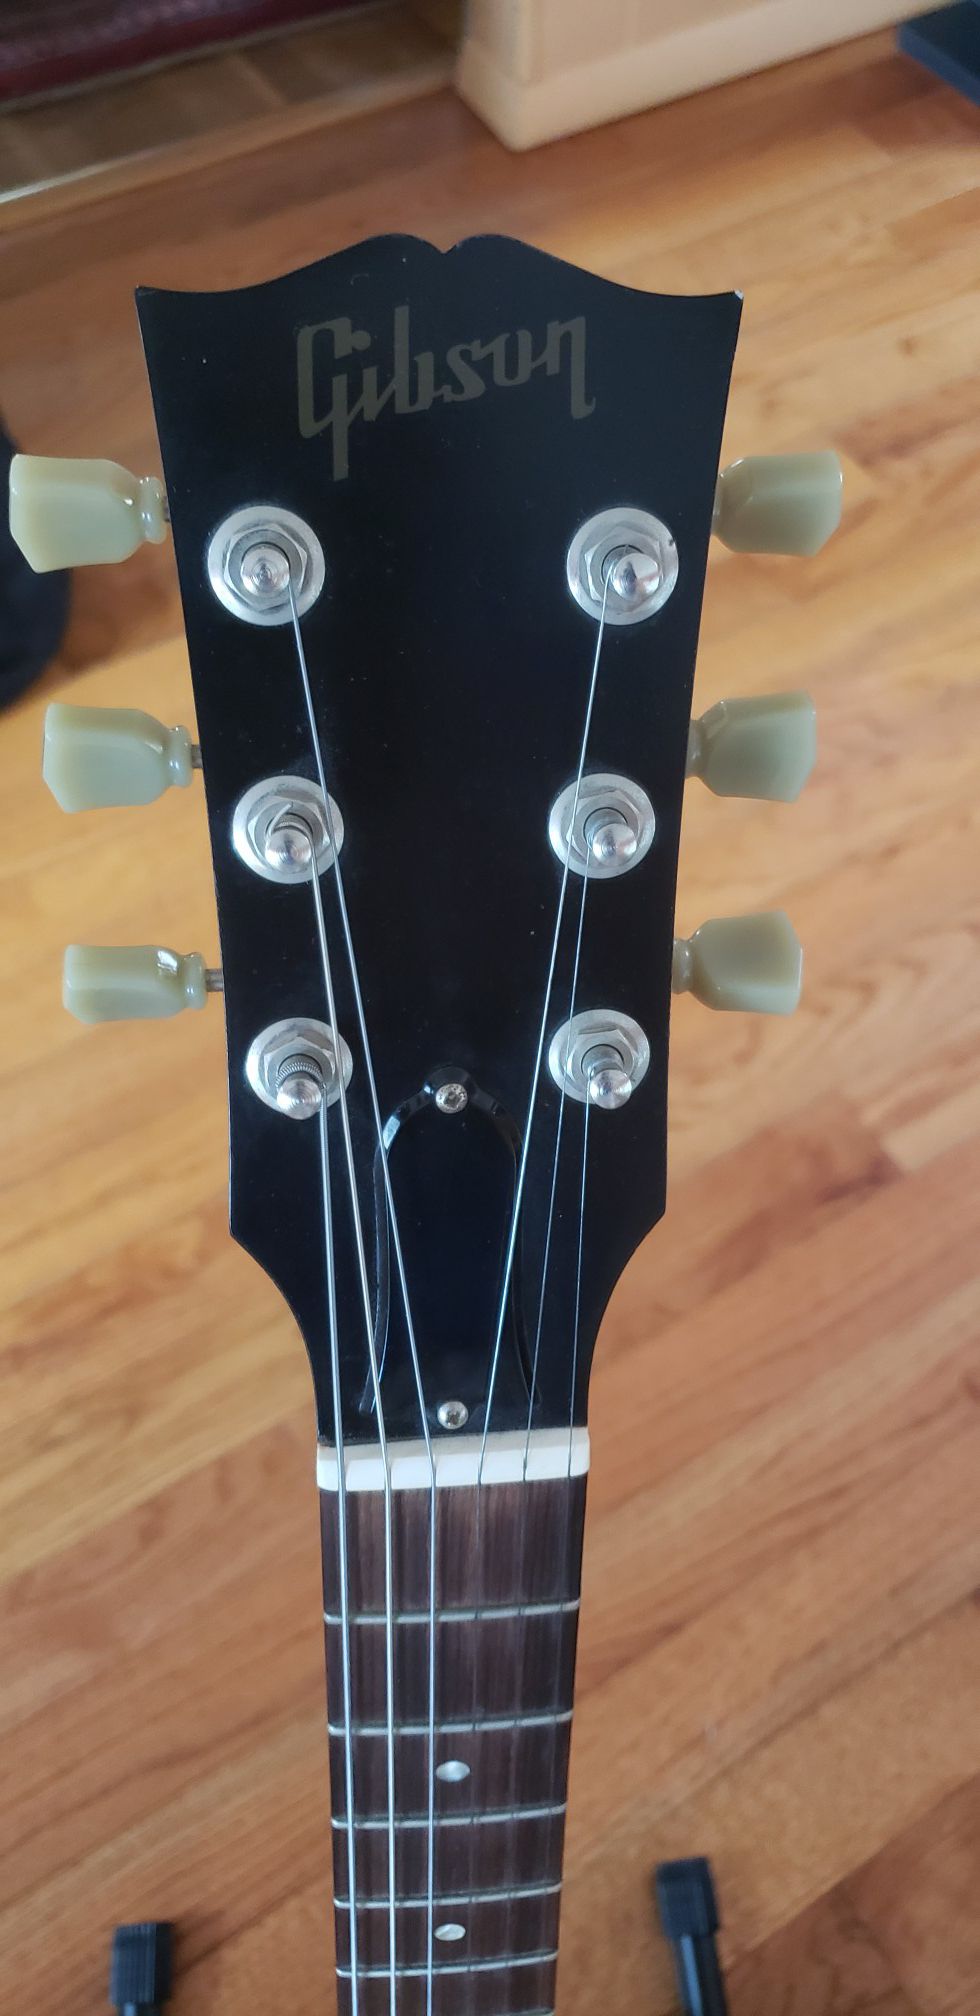 Gibson SG Standard 2005